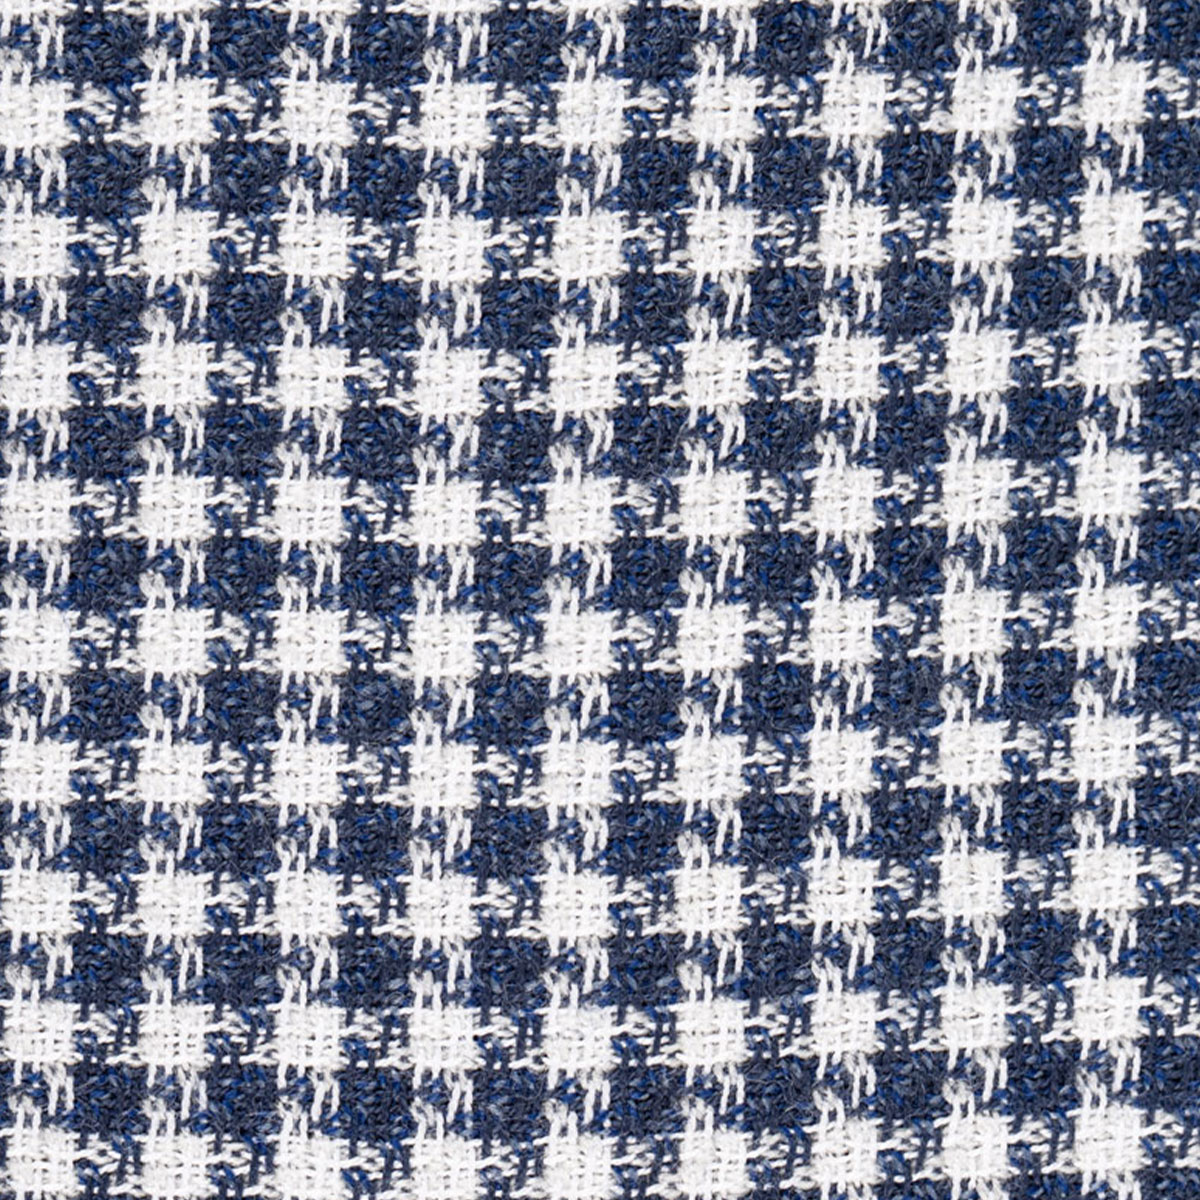 Oberstoff mit Hahnentritt-Muster in blau-weiß aus Wolle und Baumwolle